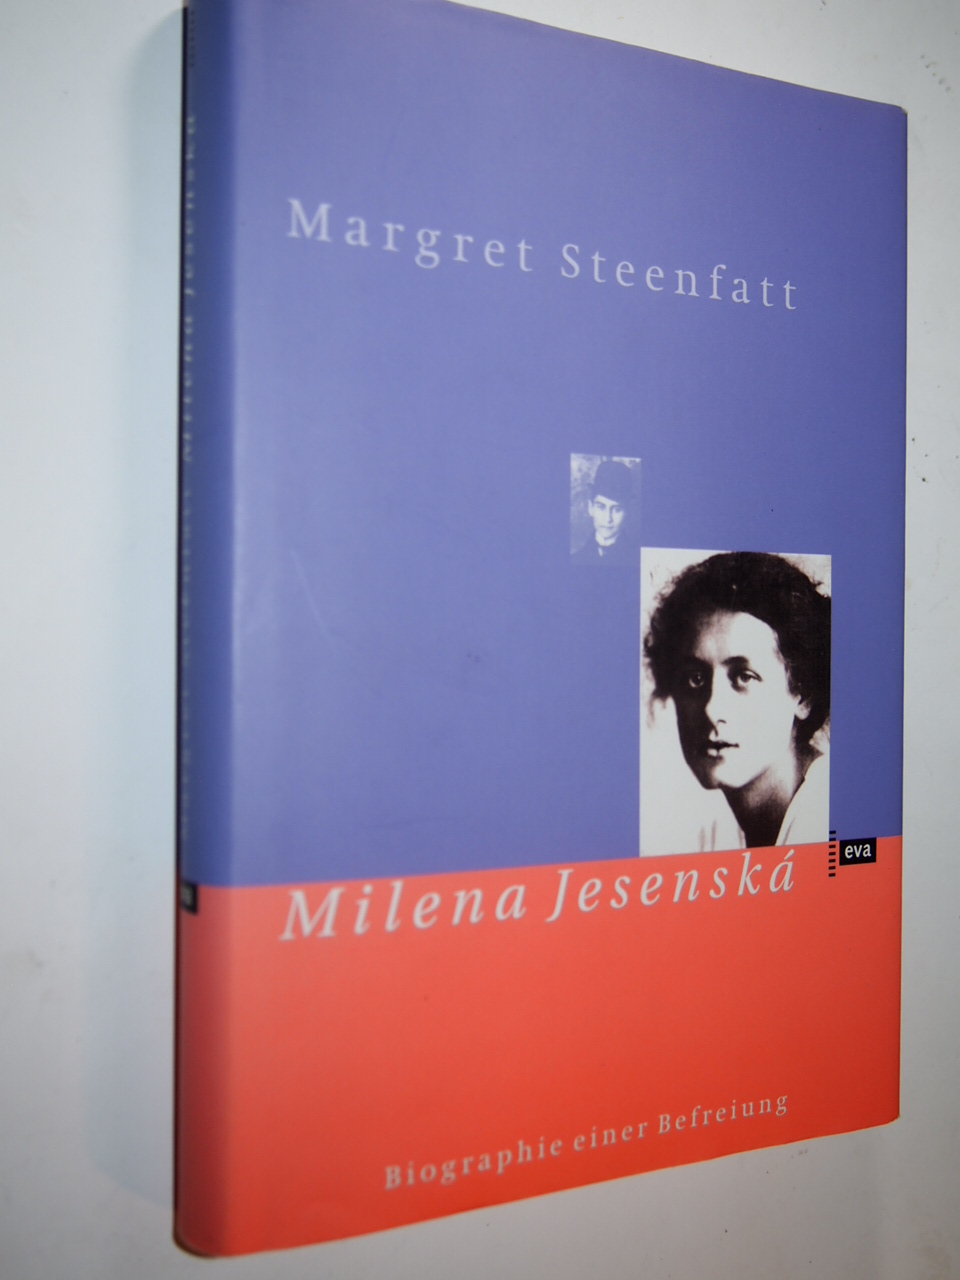 Milena Jesenská : Biographie einer Befreiung. - Steenfatt, Margret, 1935-